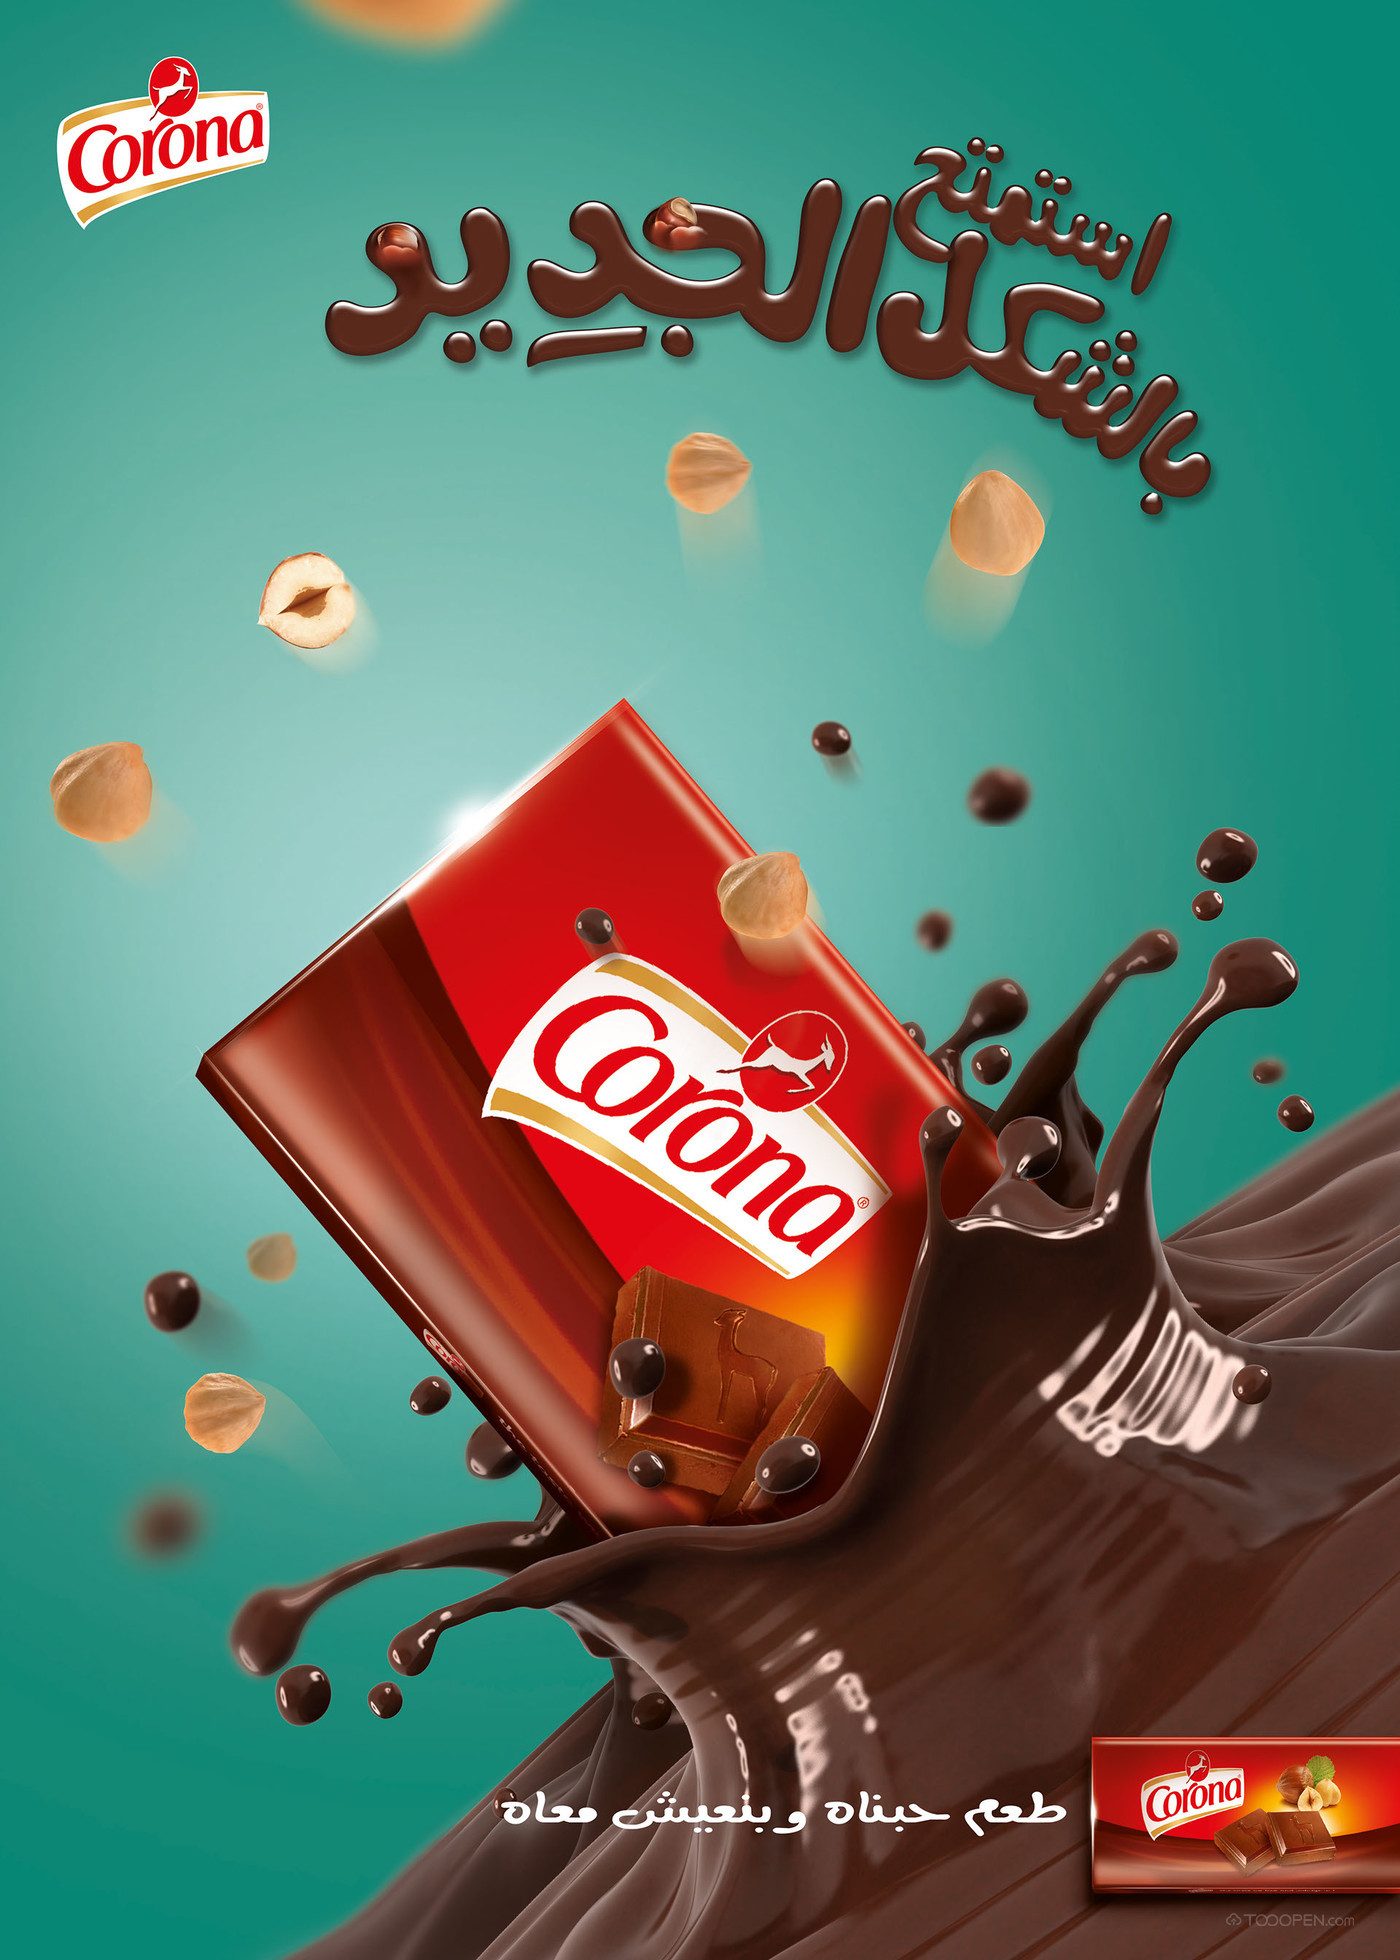 国外巧克力海报平面设计作品欣赏-03